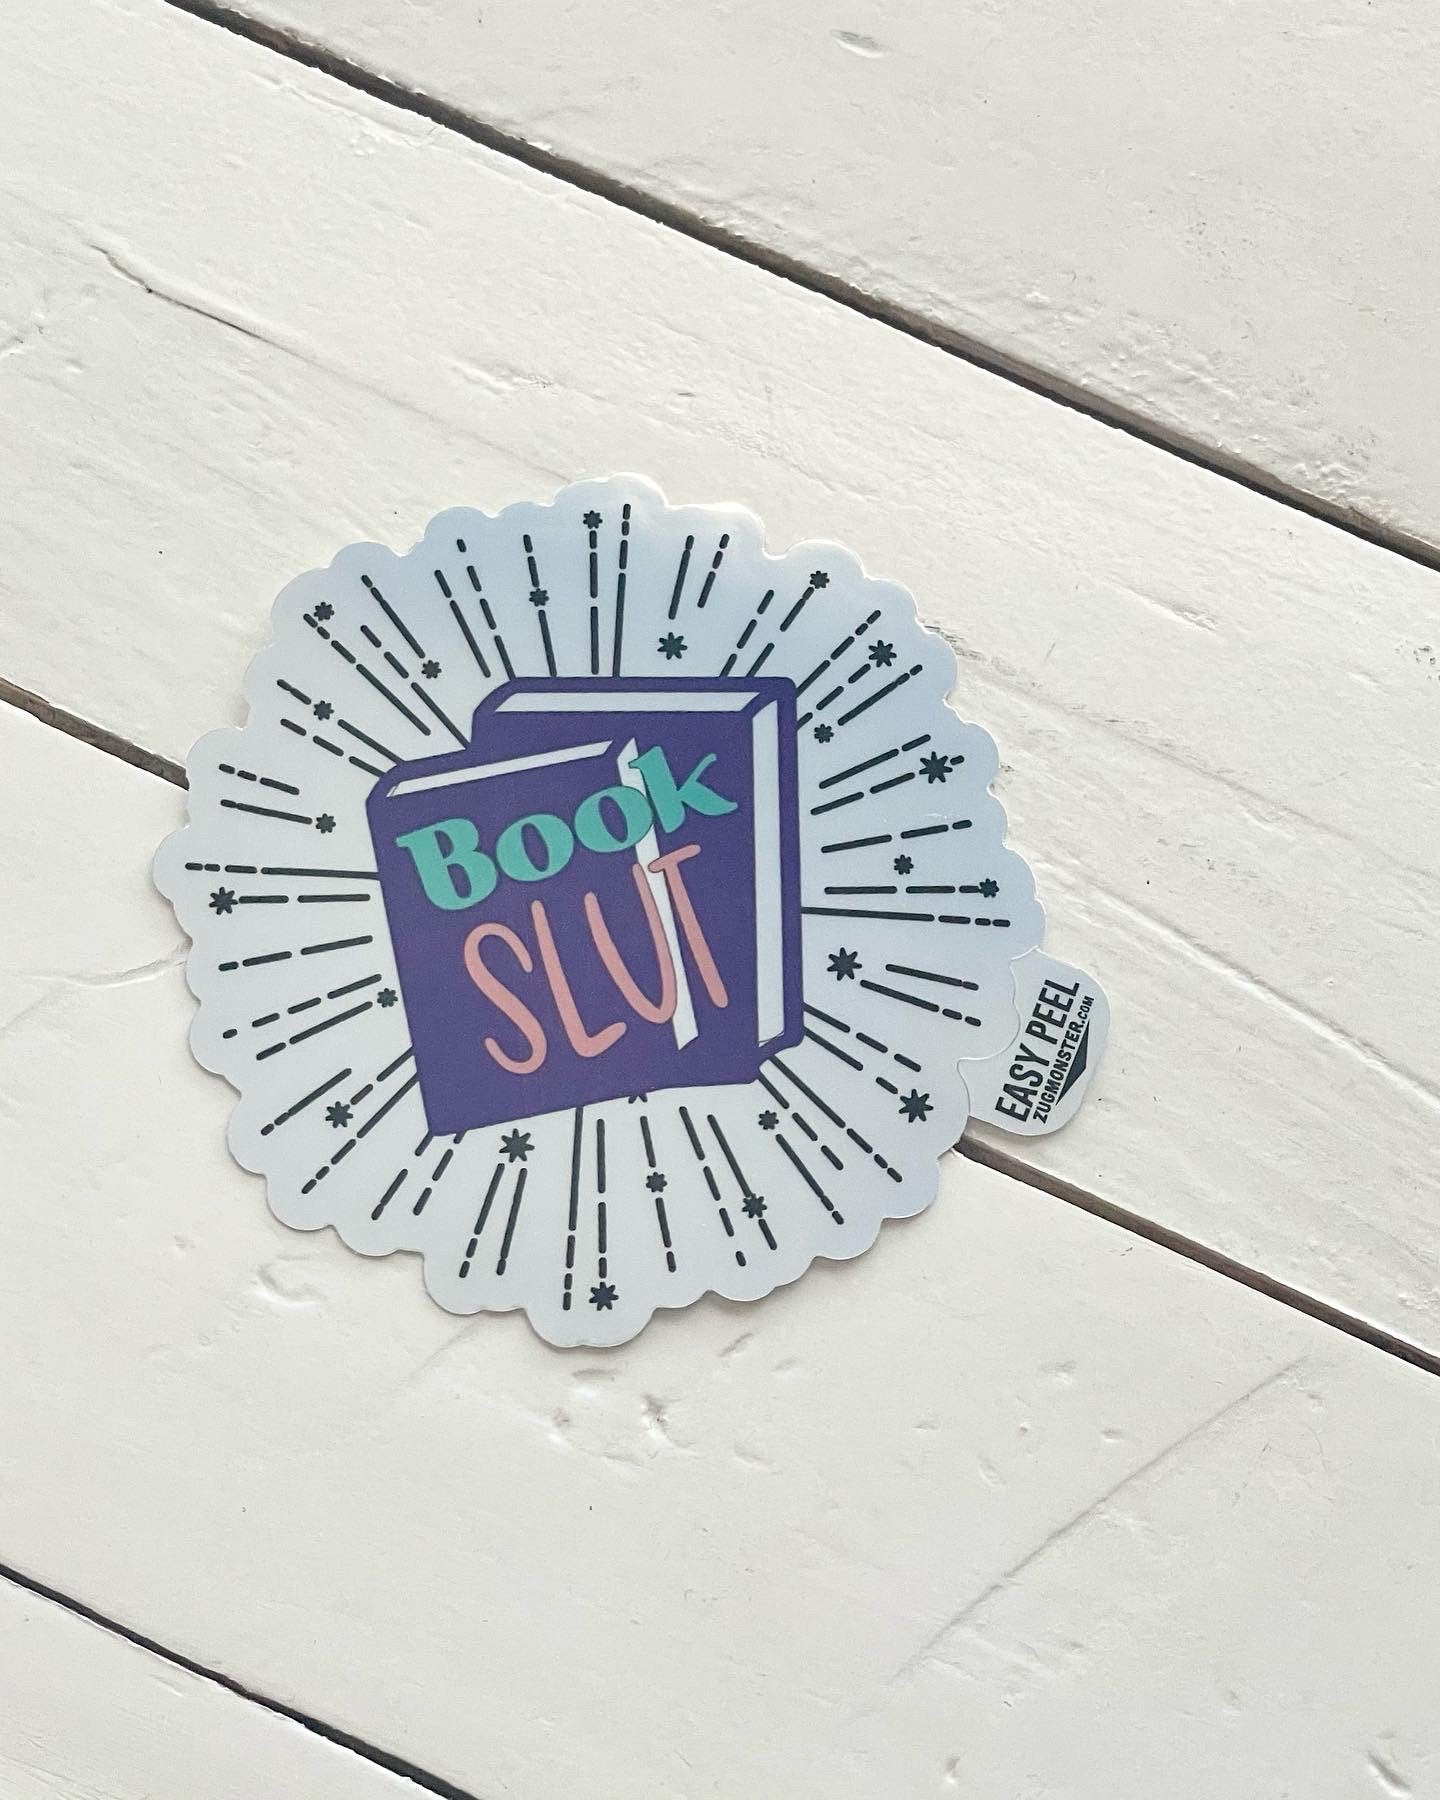 Book Slut, 3” Chrome Sticker